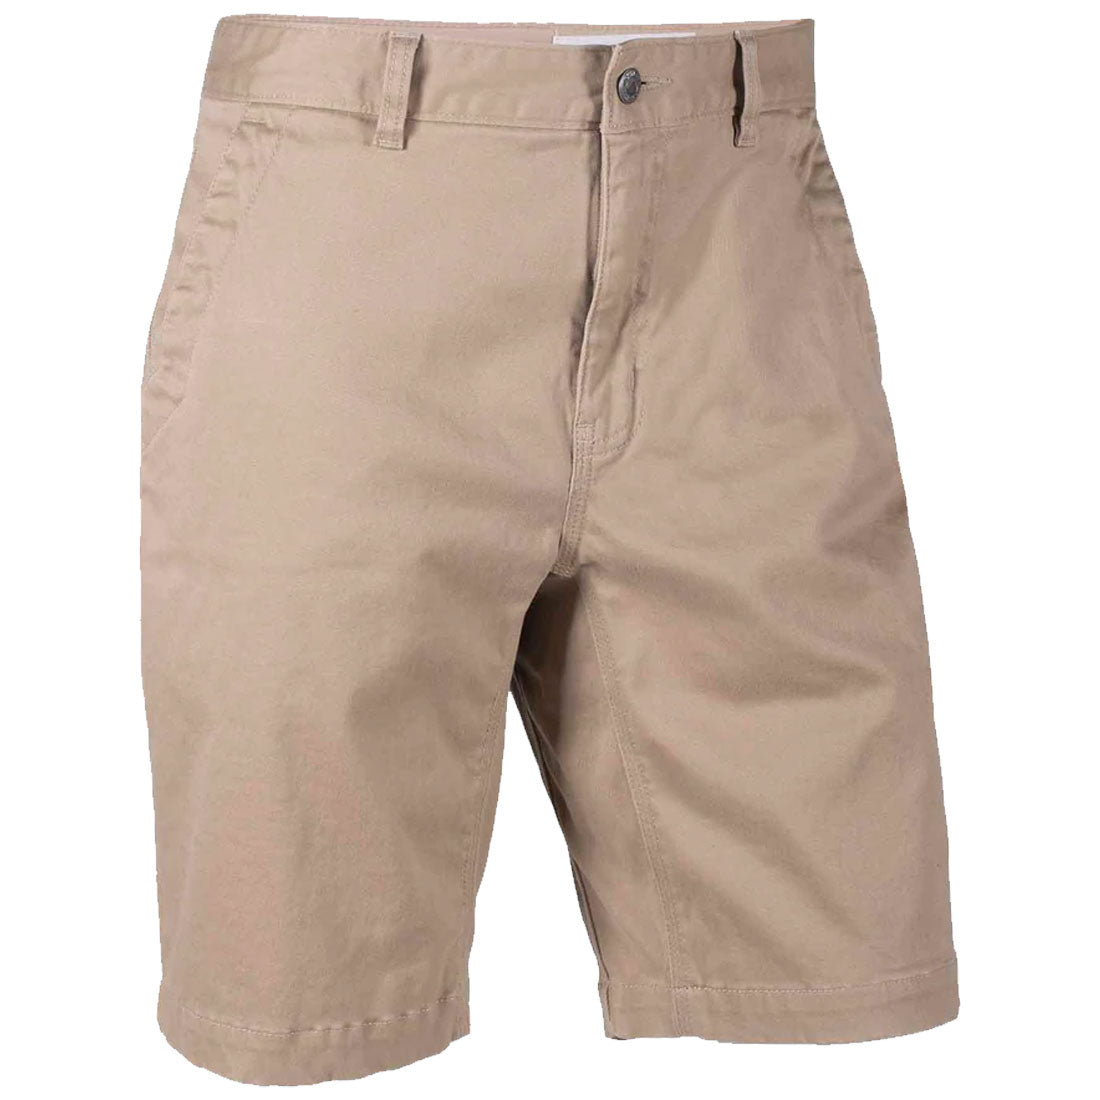 Mountain Khakis Teton Short 8" - Men's